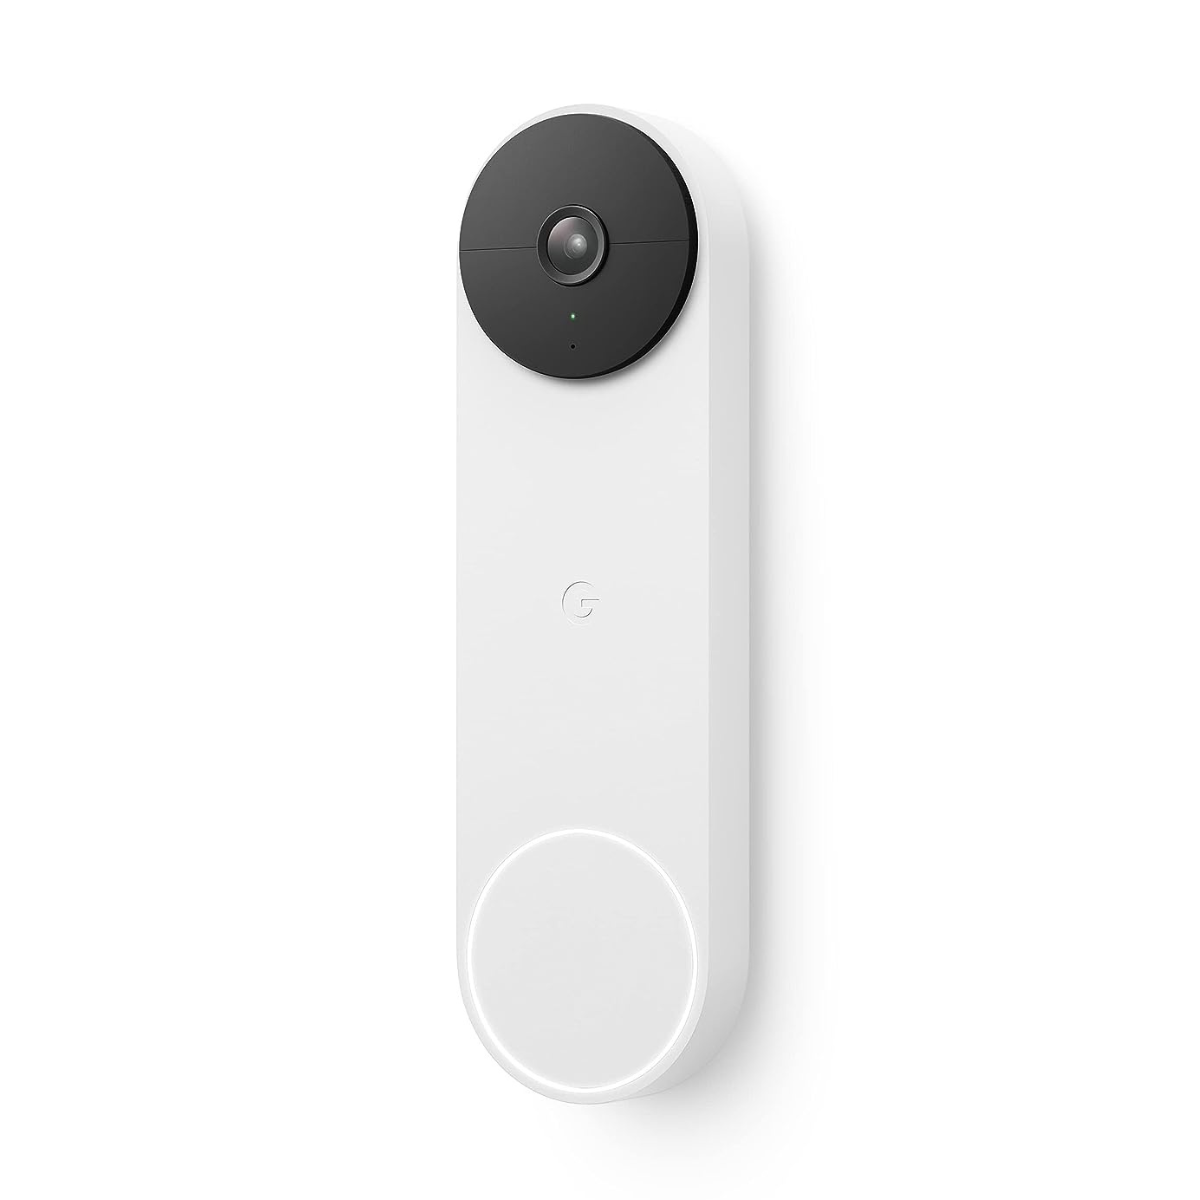 The Google Nest Doorbell (Battery, 2nd Gen)